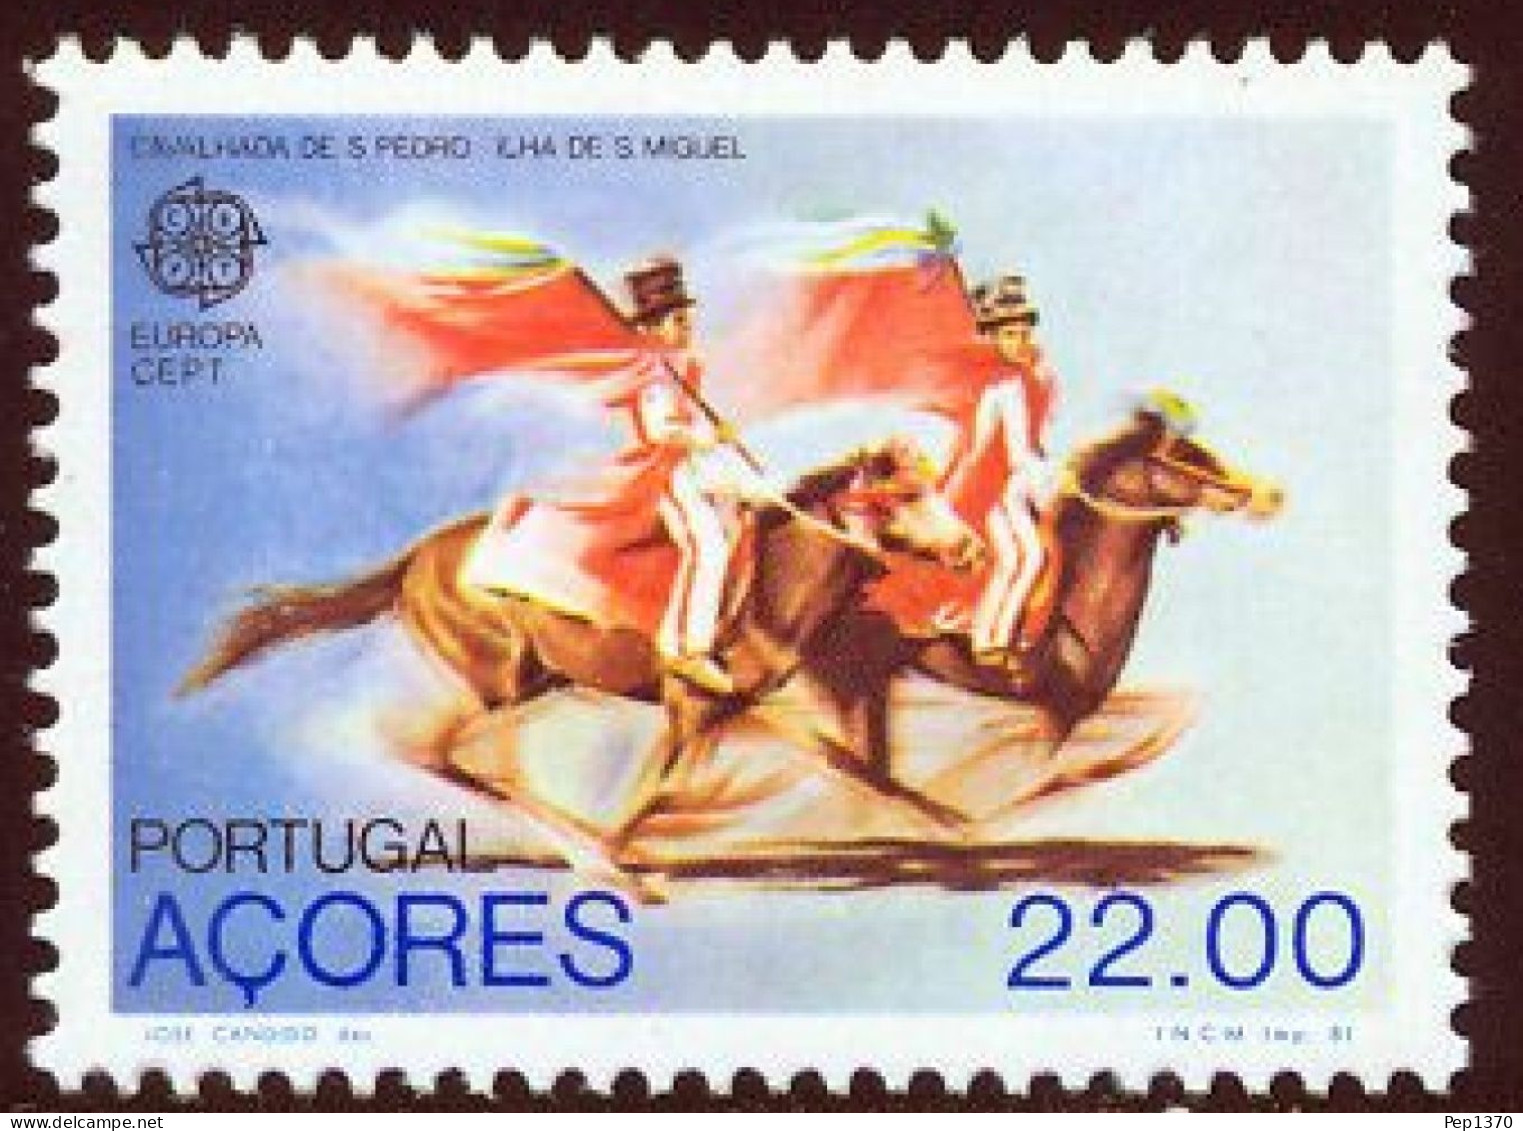 AZORES 1981 - AÇORES - EUROPA CEPT - FOLKLORE - YVERT 331** - Azores